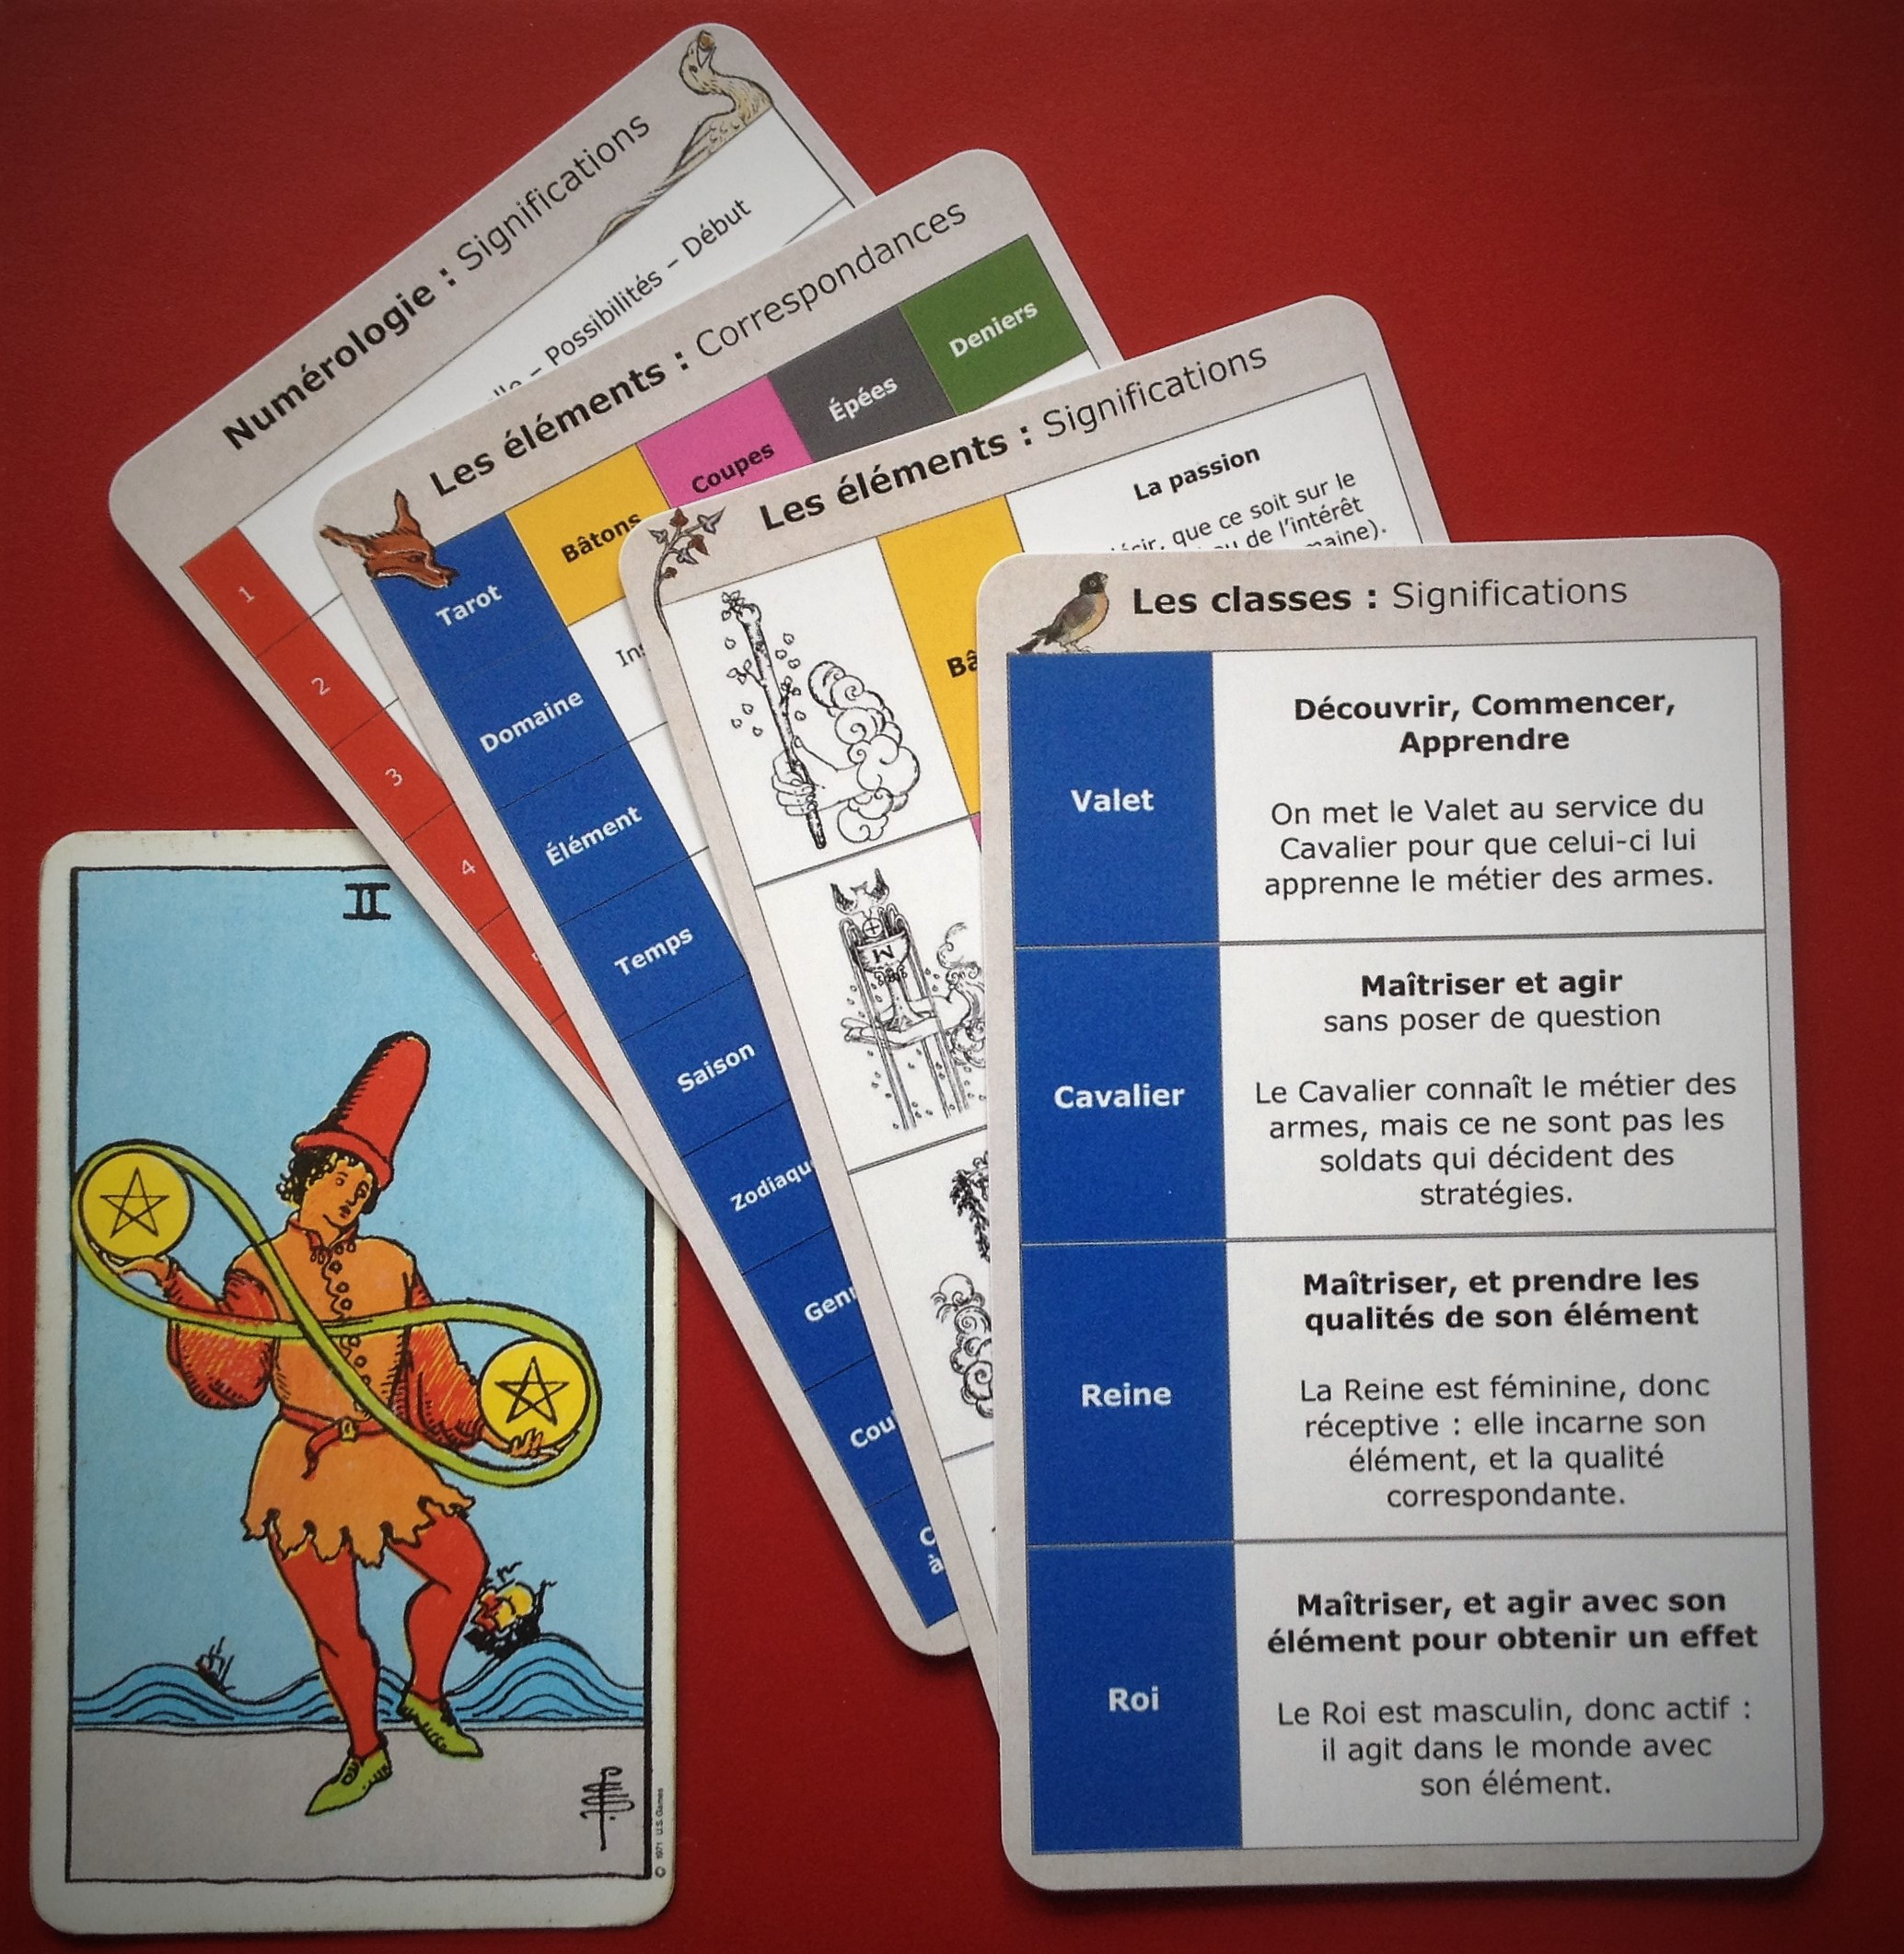 Tarot de Gen - Cartes de tarot pour débutants avec mots-clés EN